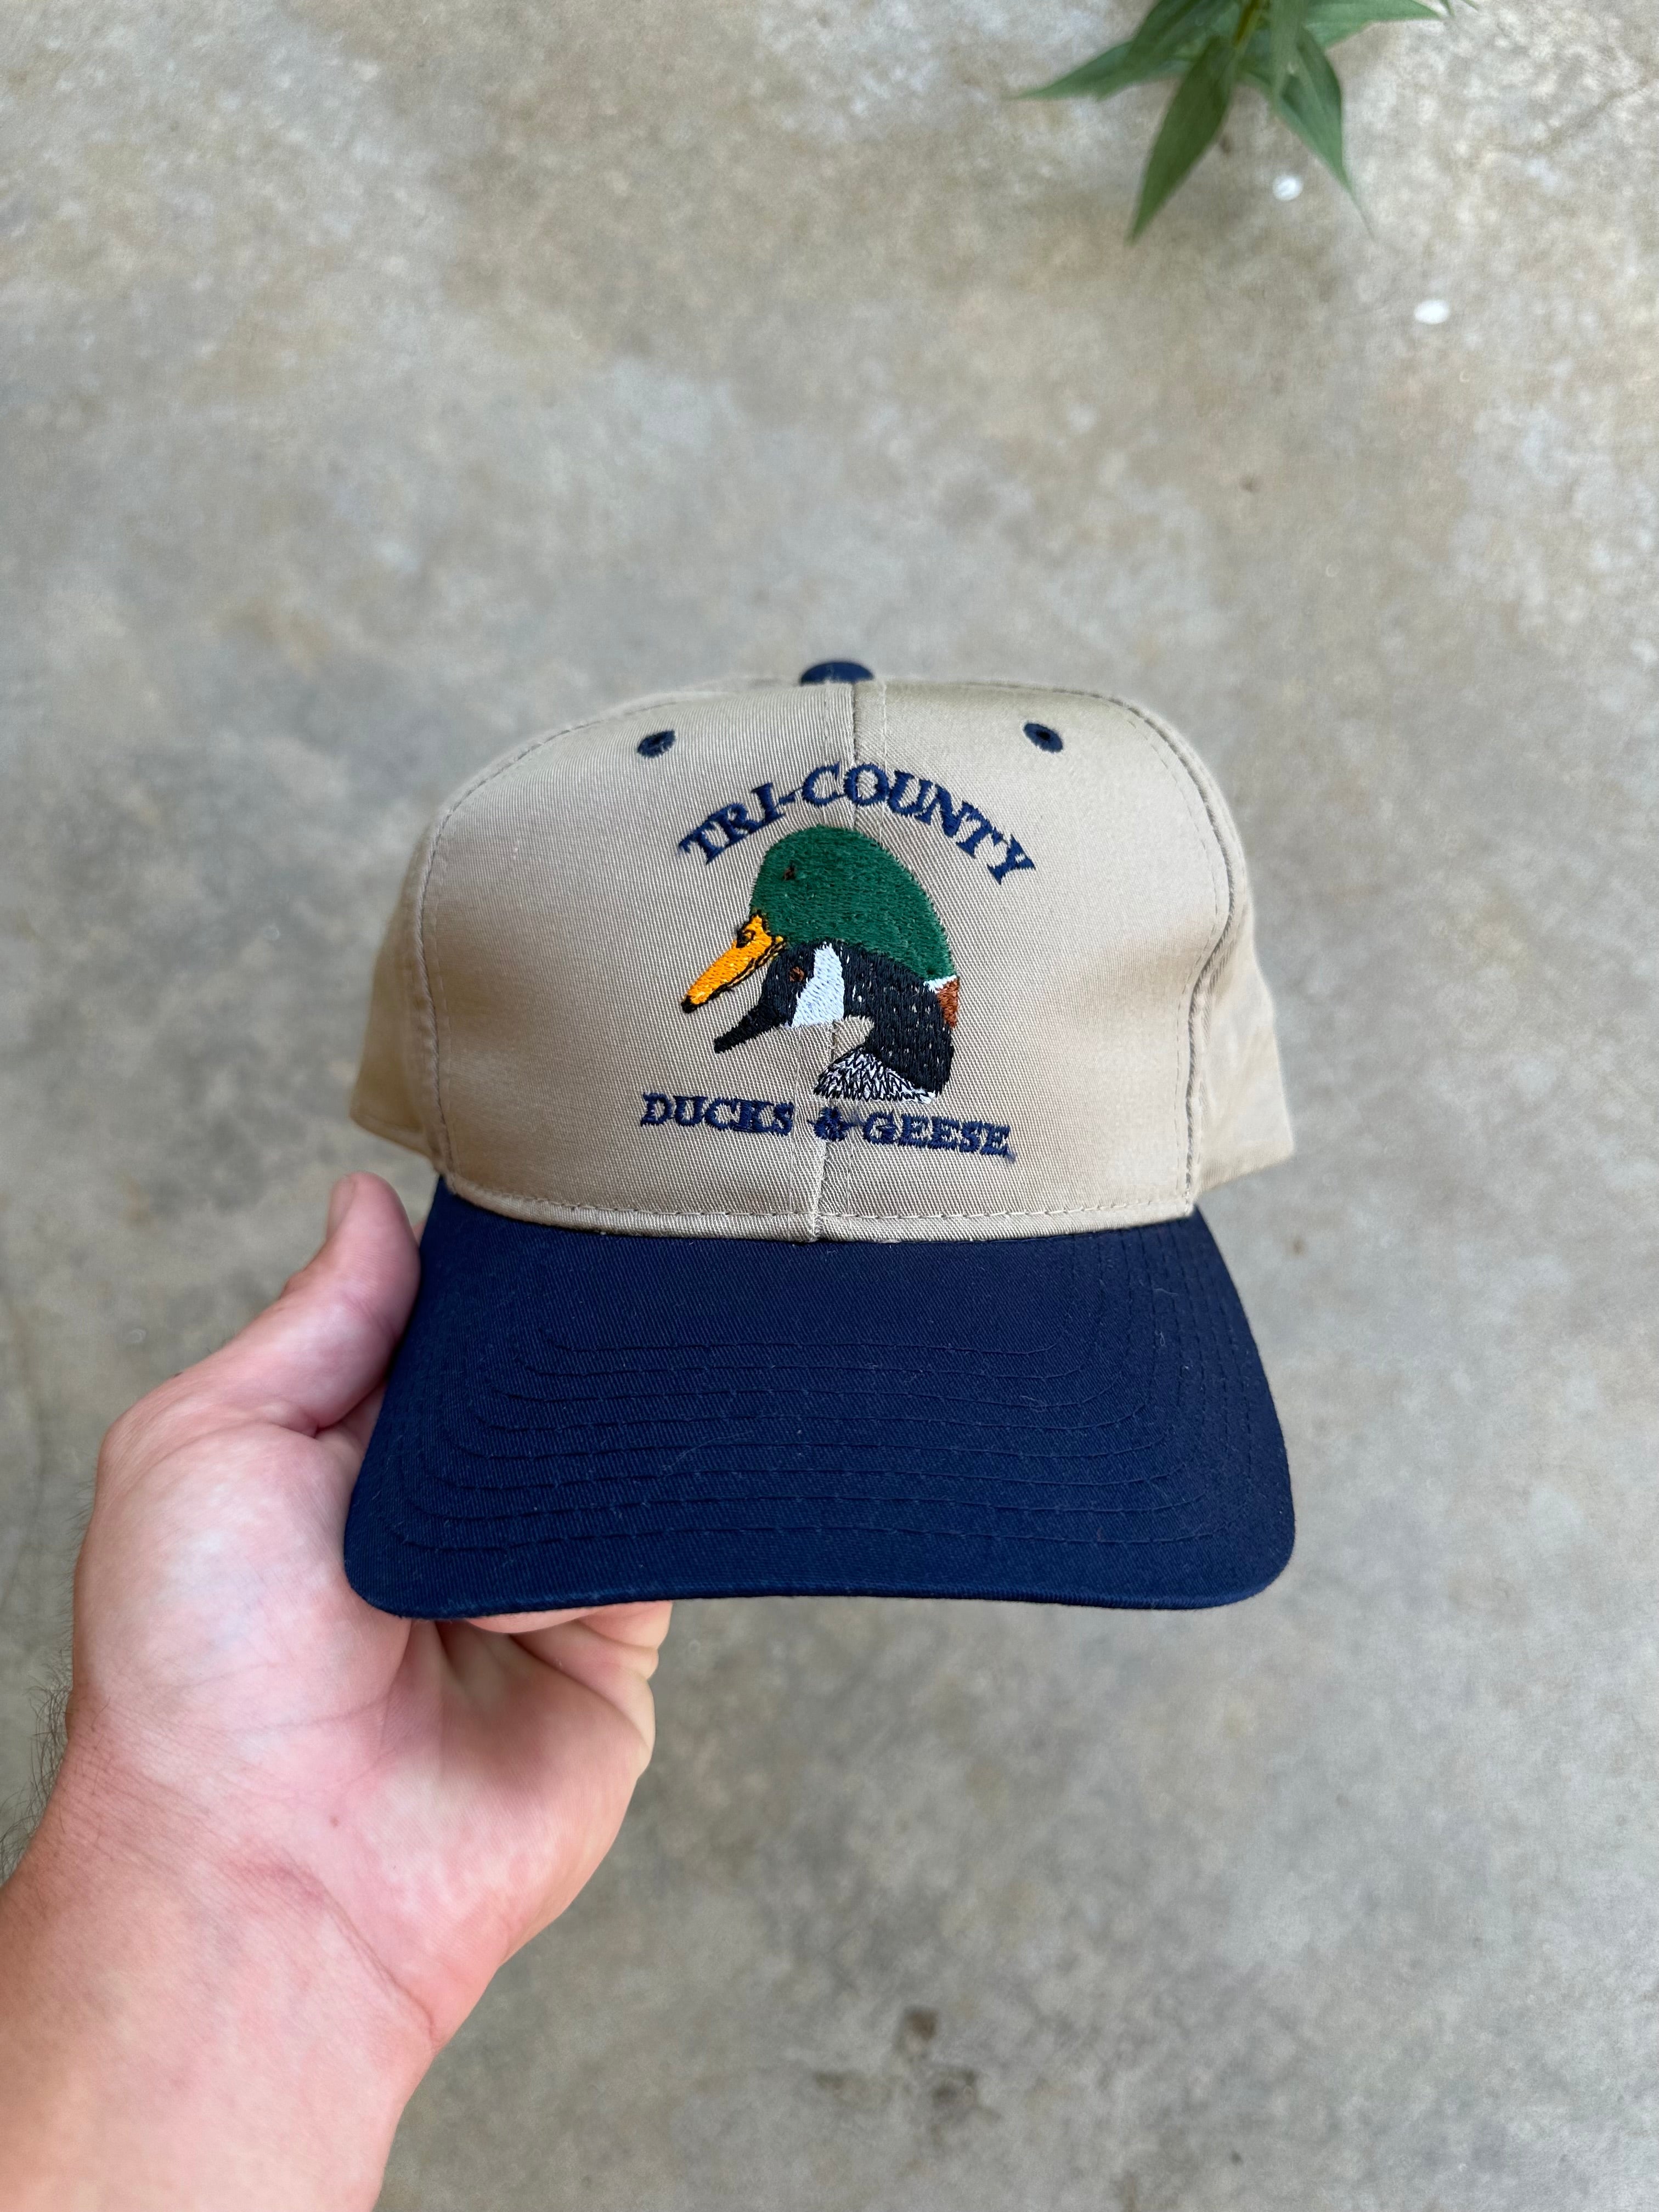 Vintage Tri-County Ducks & Geese SnapBack